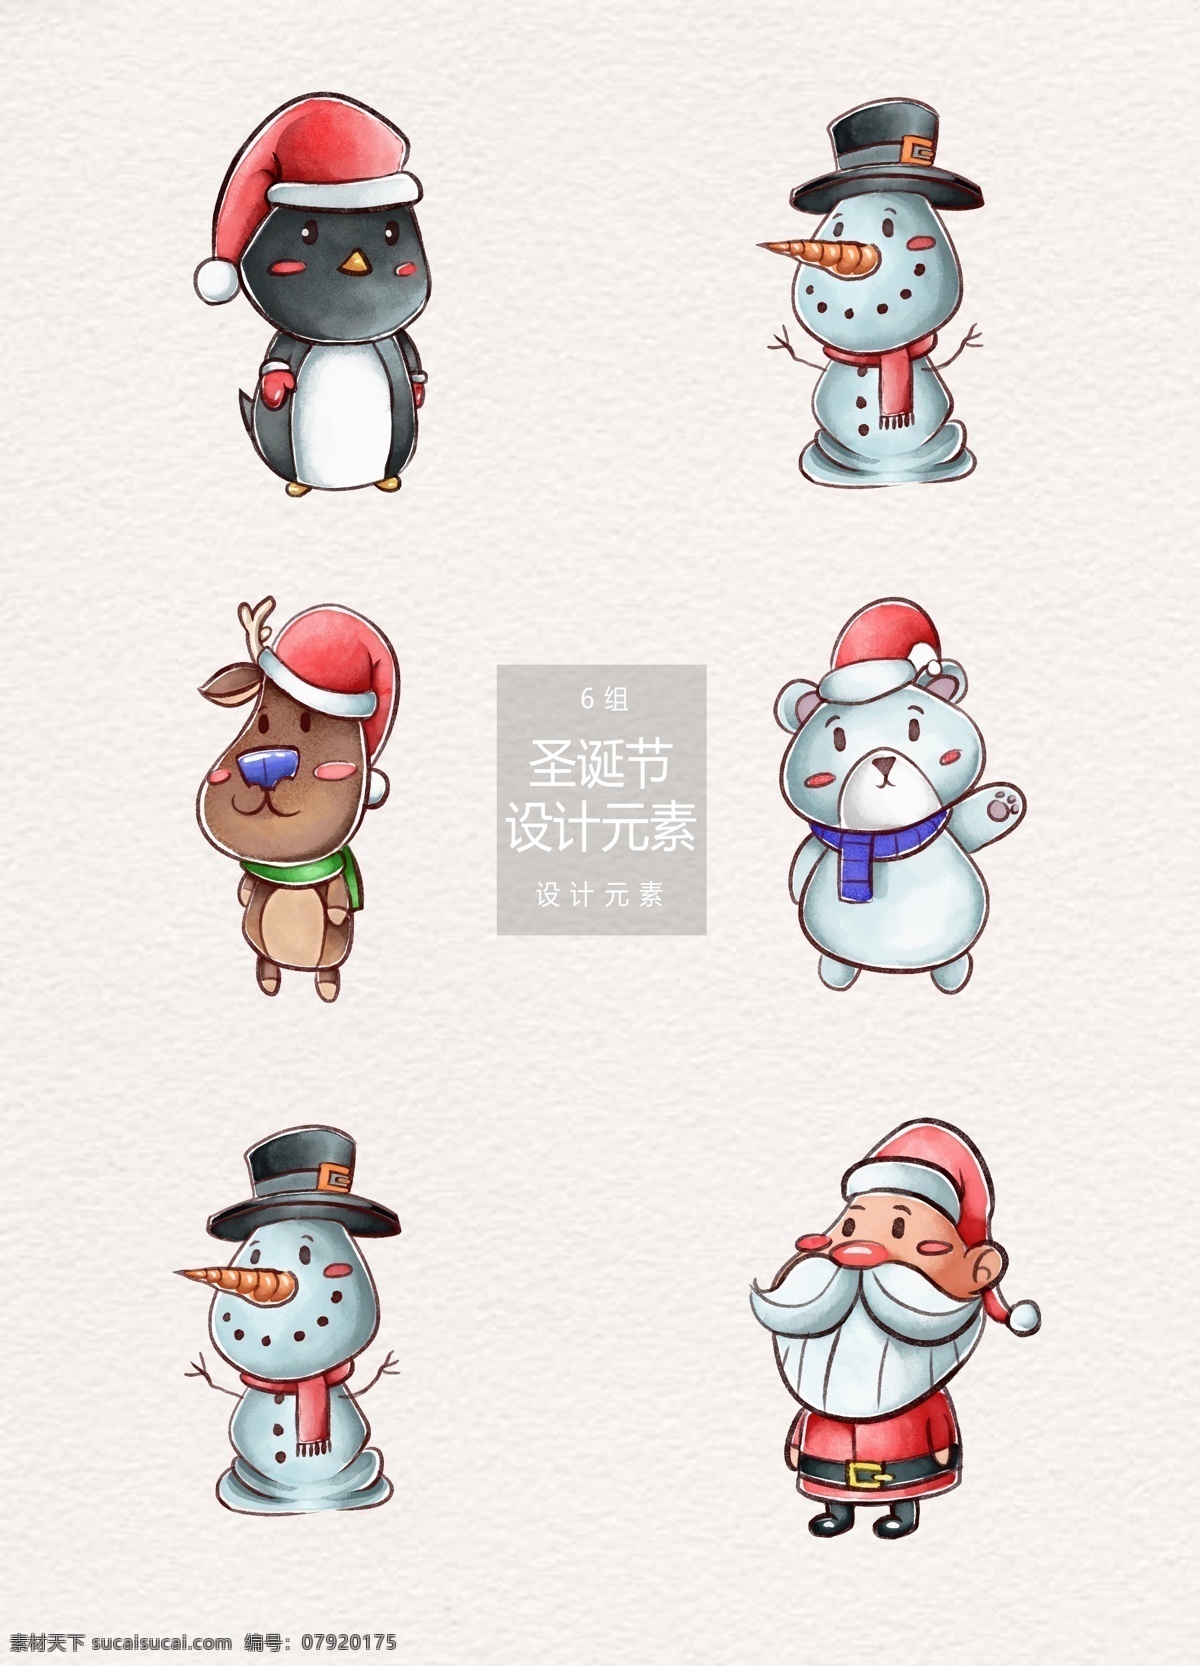 圣诞节 卡通 人物 元素 卡通人物 圣诞老人 雪人 企鹅 圣诞 圣诞人物 驯鹿 北极熊